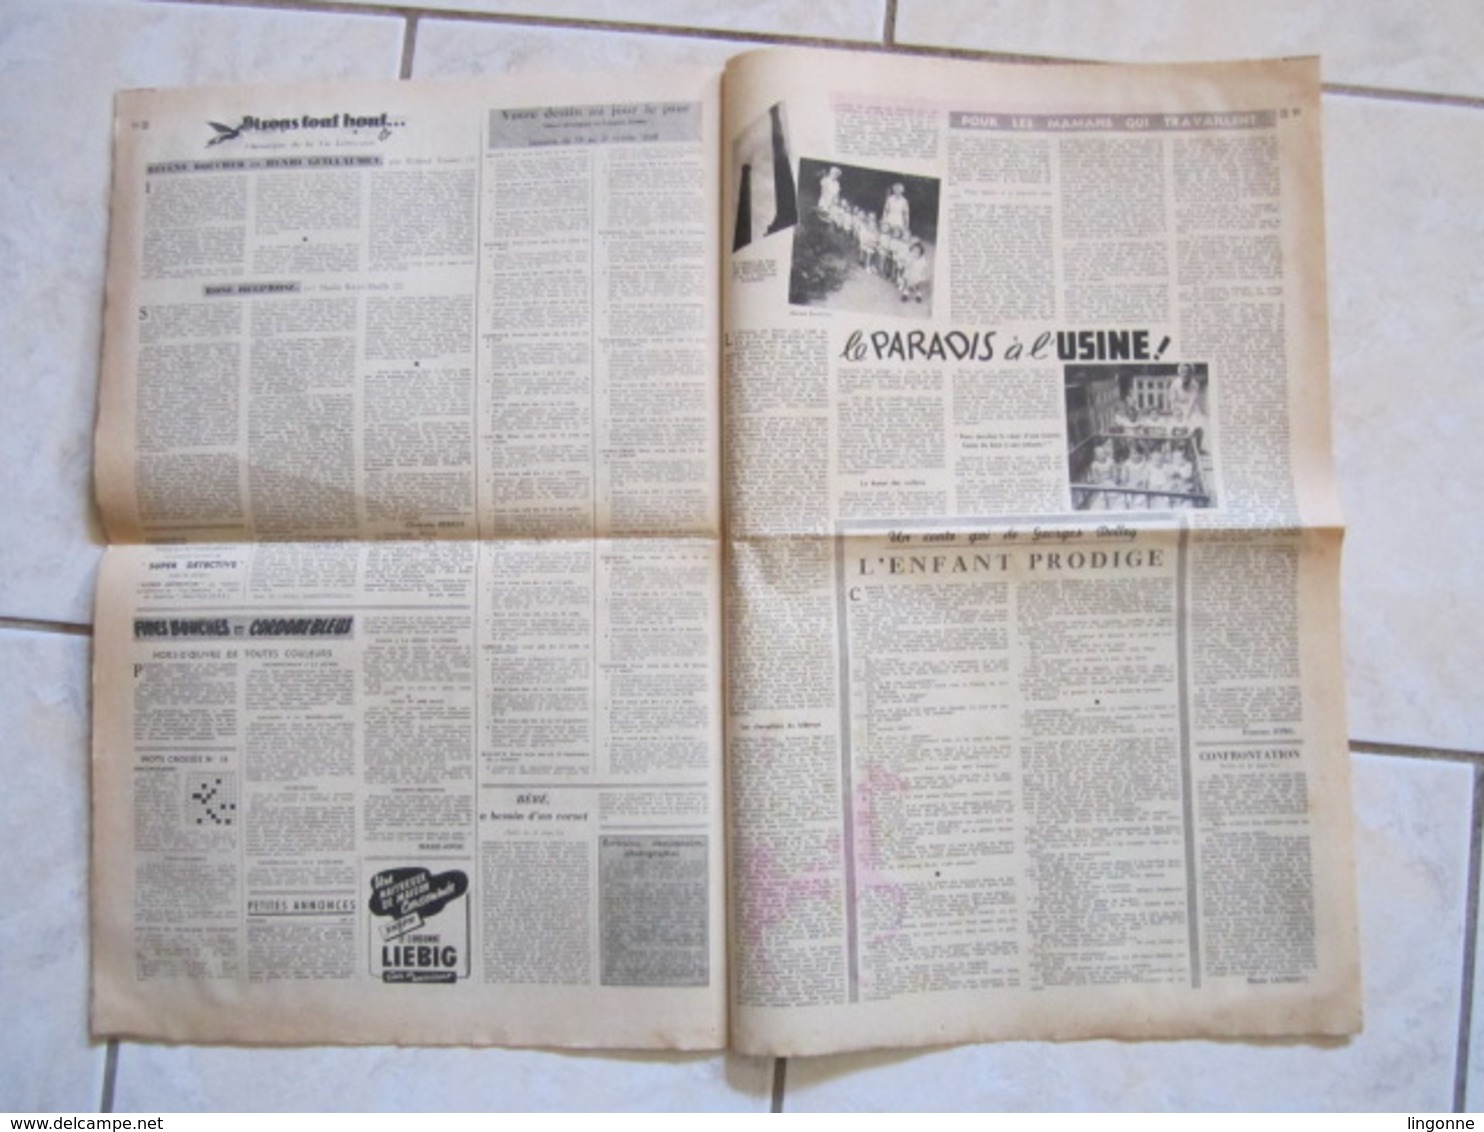 RARE LE JOURNAL de la FEMME Hebdomadaire interdit sous l'Occupation Directrice : Raymonde MACHARD 13 FEVRIER 1948